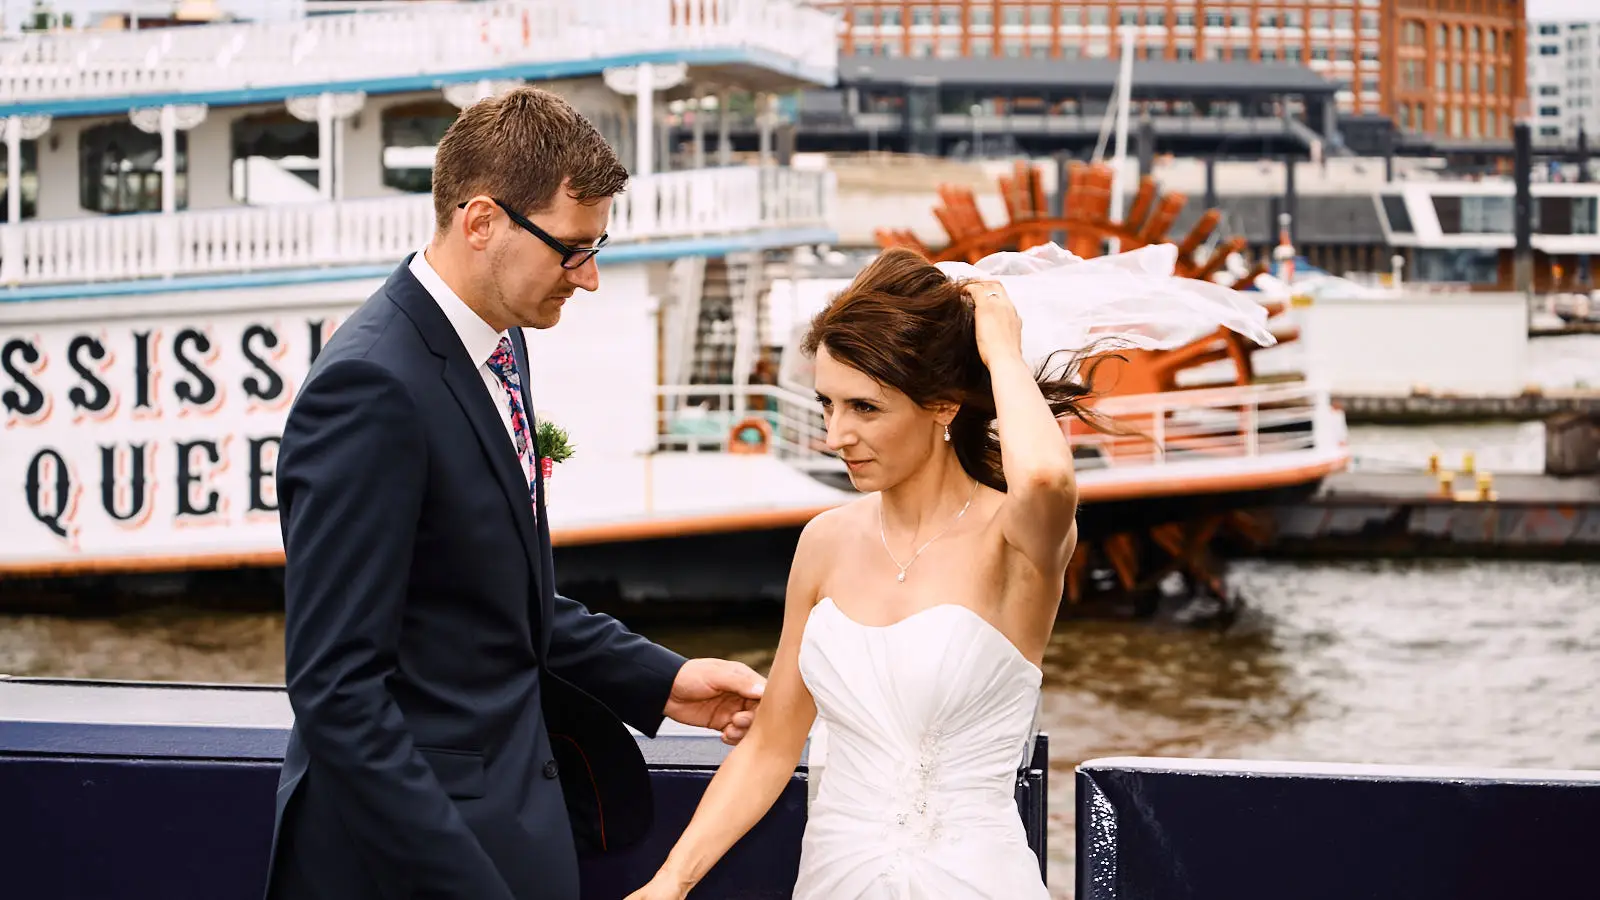 Hochzeitsfotograf Hamburg Hafen. Eine traumhafte Kulisse für traumhafte Momente.